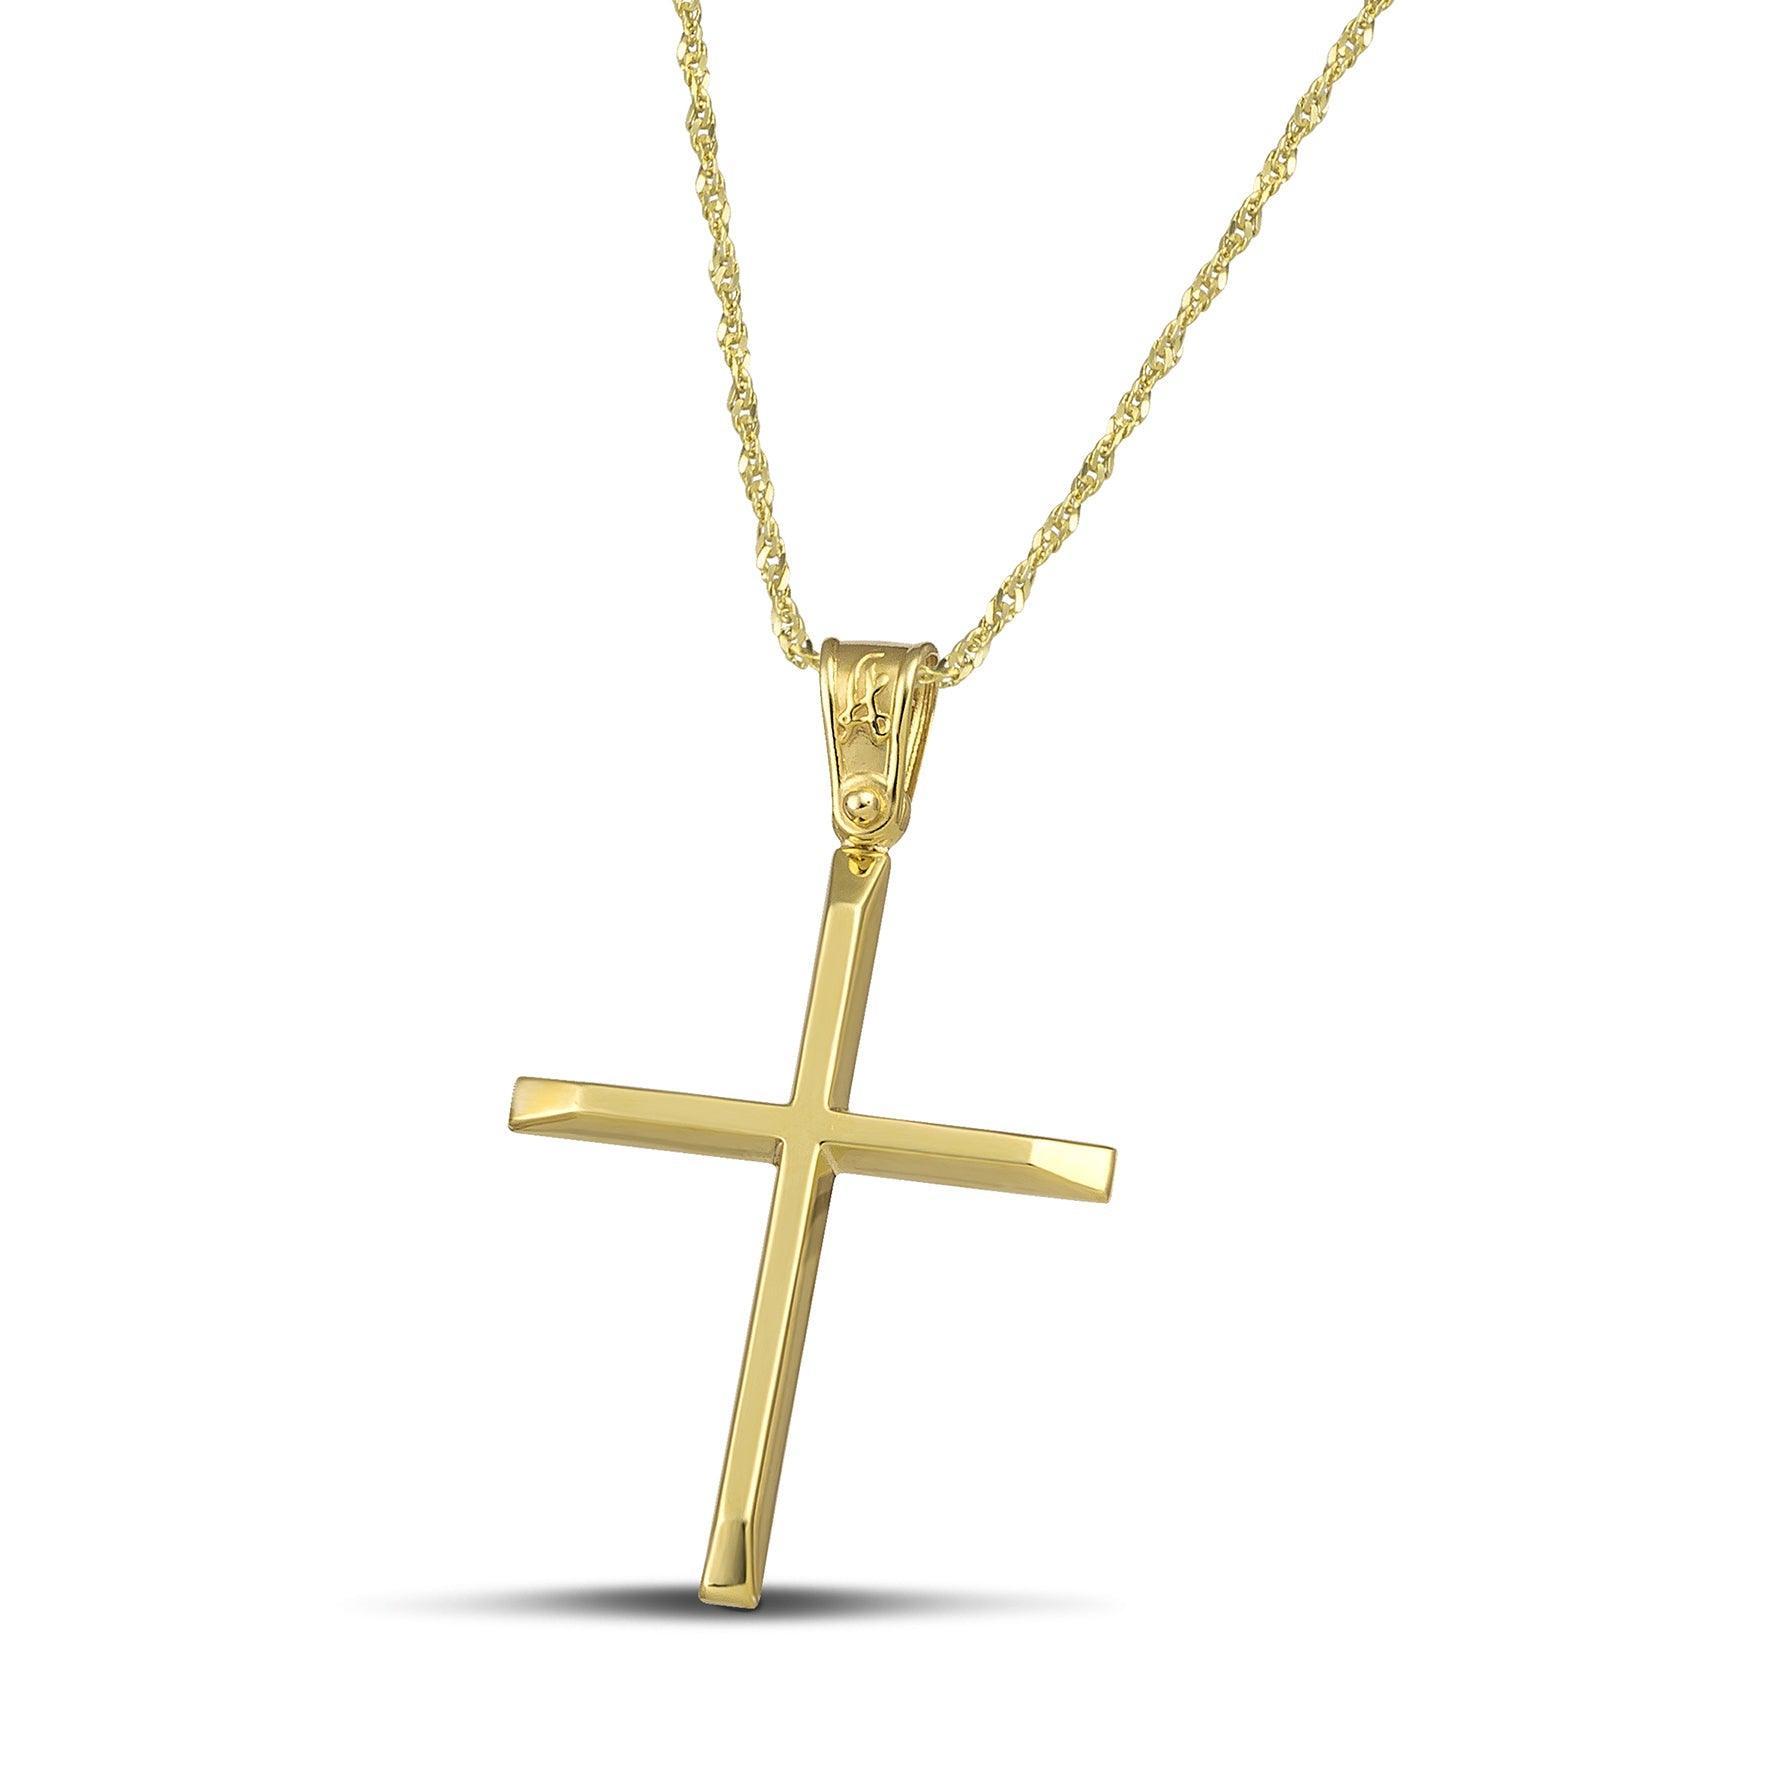 Χρυσός βαφτιστικός σταυρός Κ14 για γυναίκα. Χειροποίητο κόσμημα με ελαφριά κατασκευή, περασμένο σε λεπτή, στριφτή αλυσίδα.